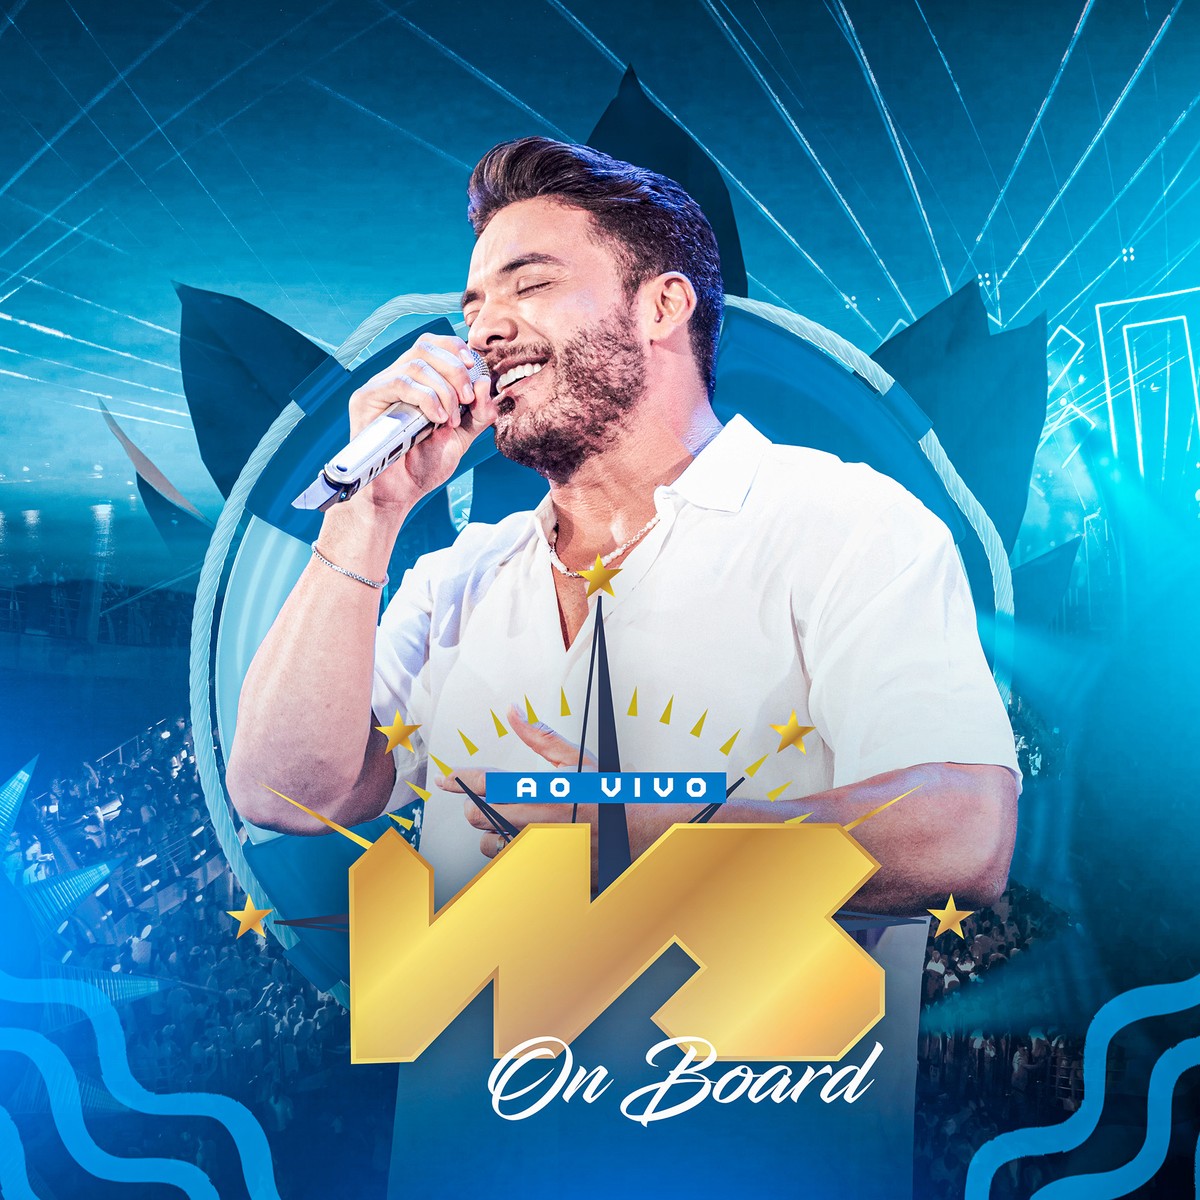 Wesley Safadão completa o álbum ‘Ws on board’ com quatro músicas inéditas | Weblog do Mauro Ferreira